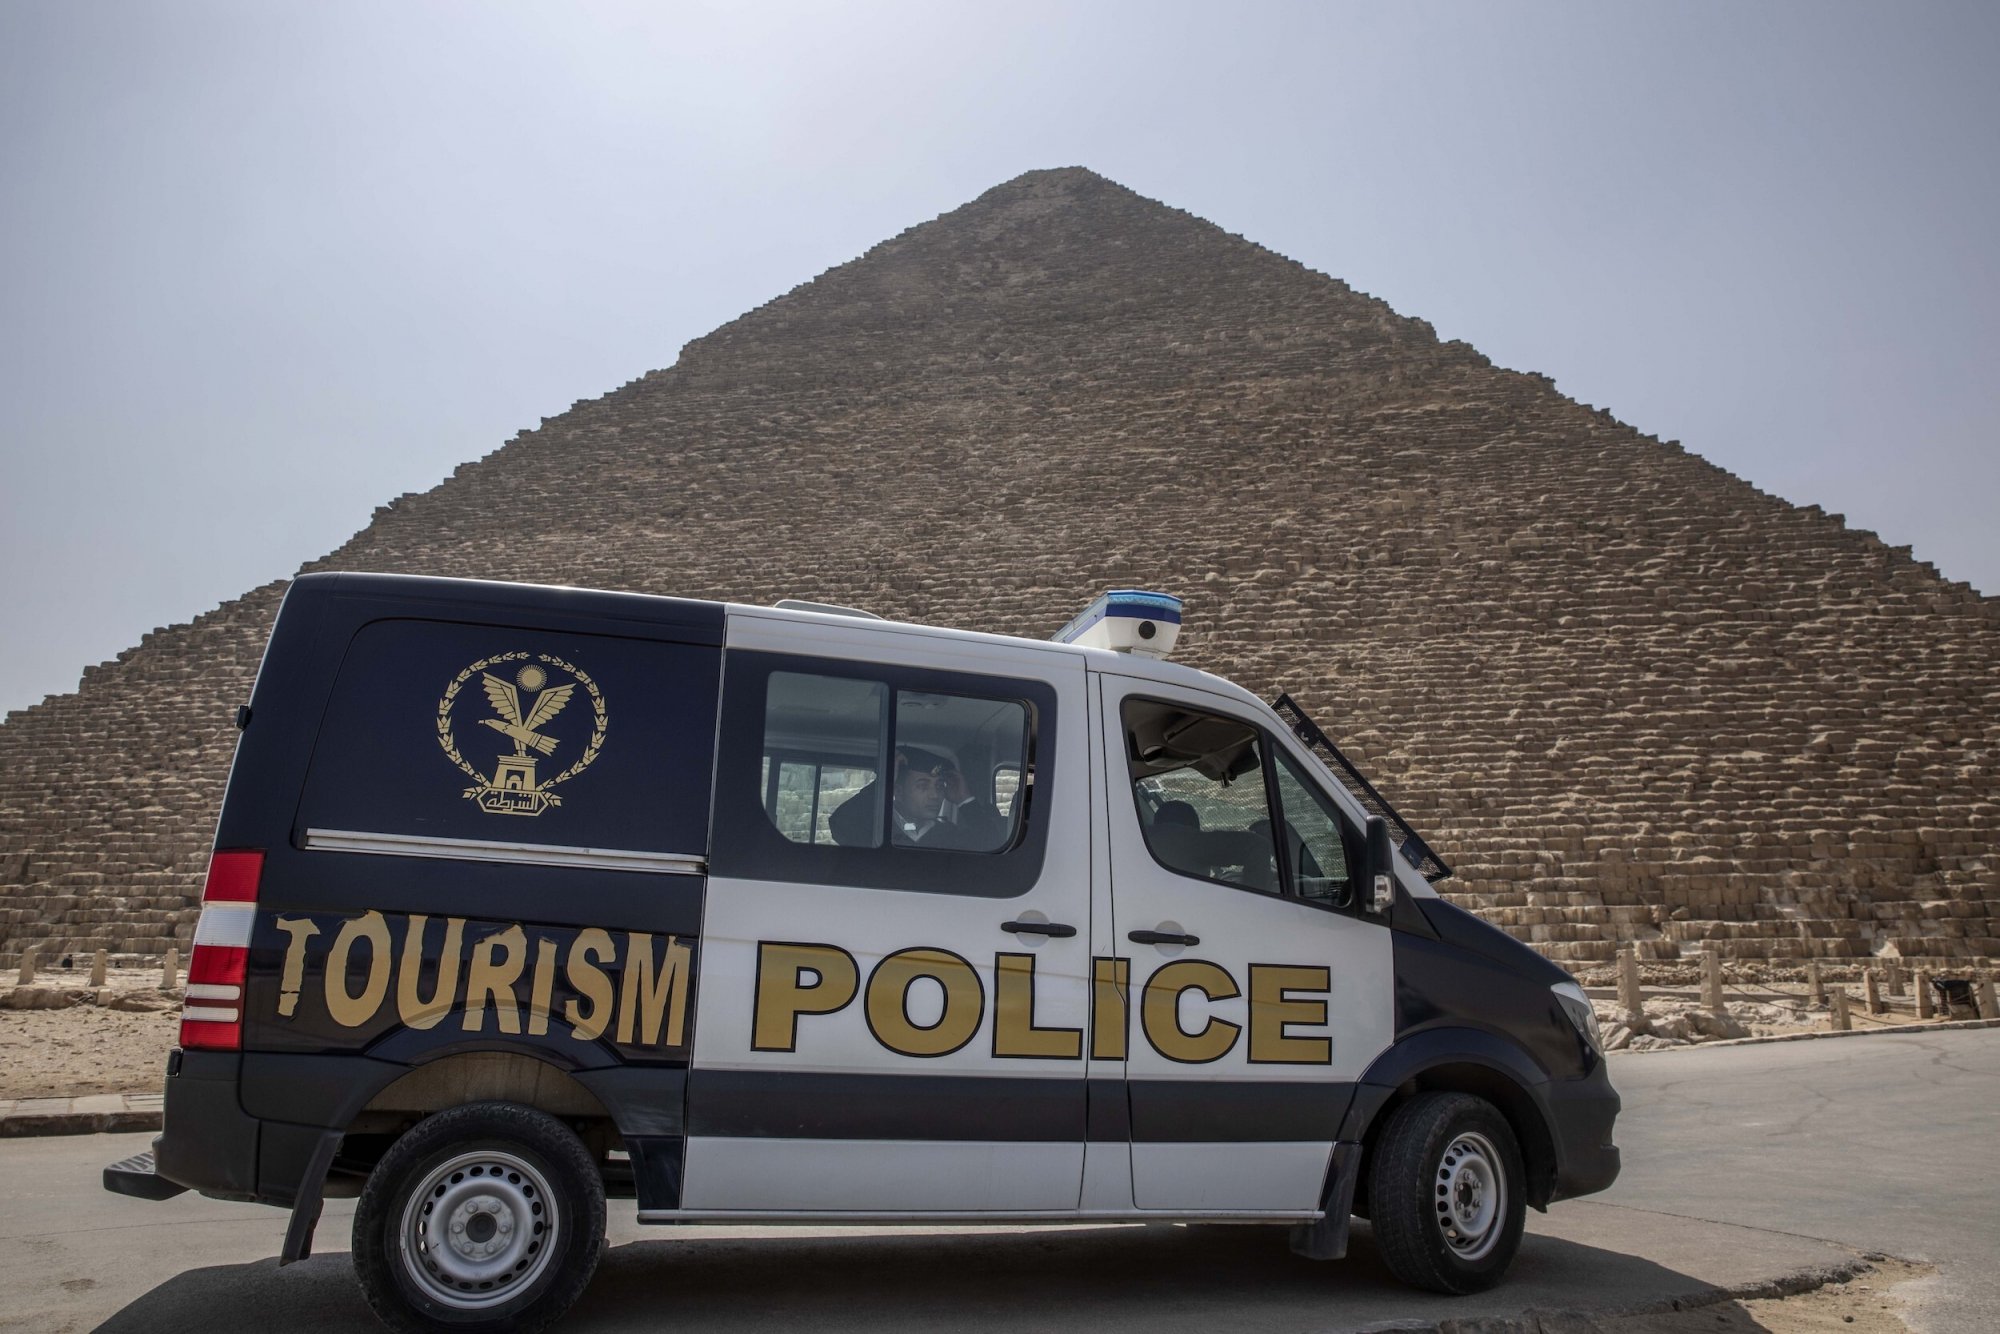 Πυροβολισμοί στην Αίγυπτο: Αιγύπτιος αστυνομικός σκότωσε δύο Ισραηλινούς τουρίστες